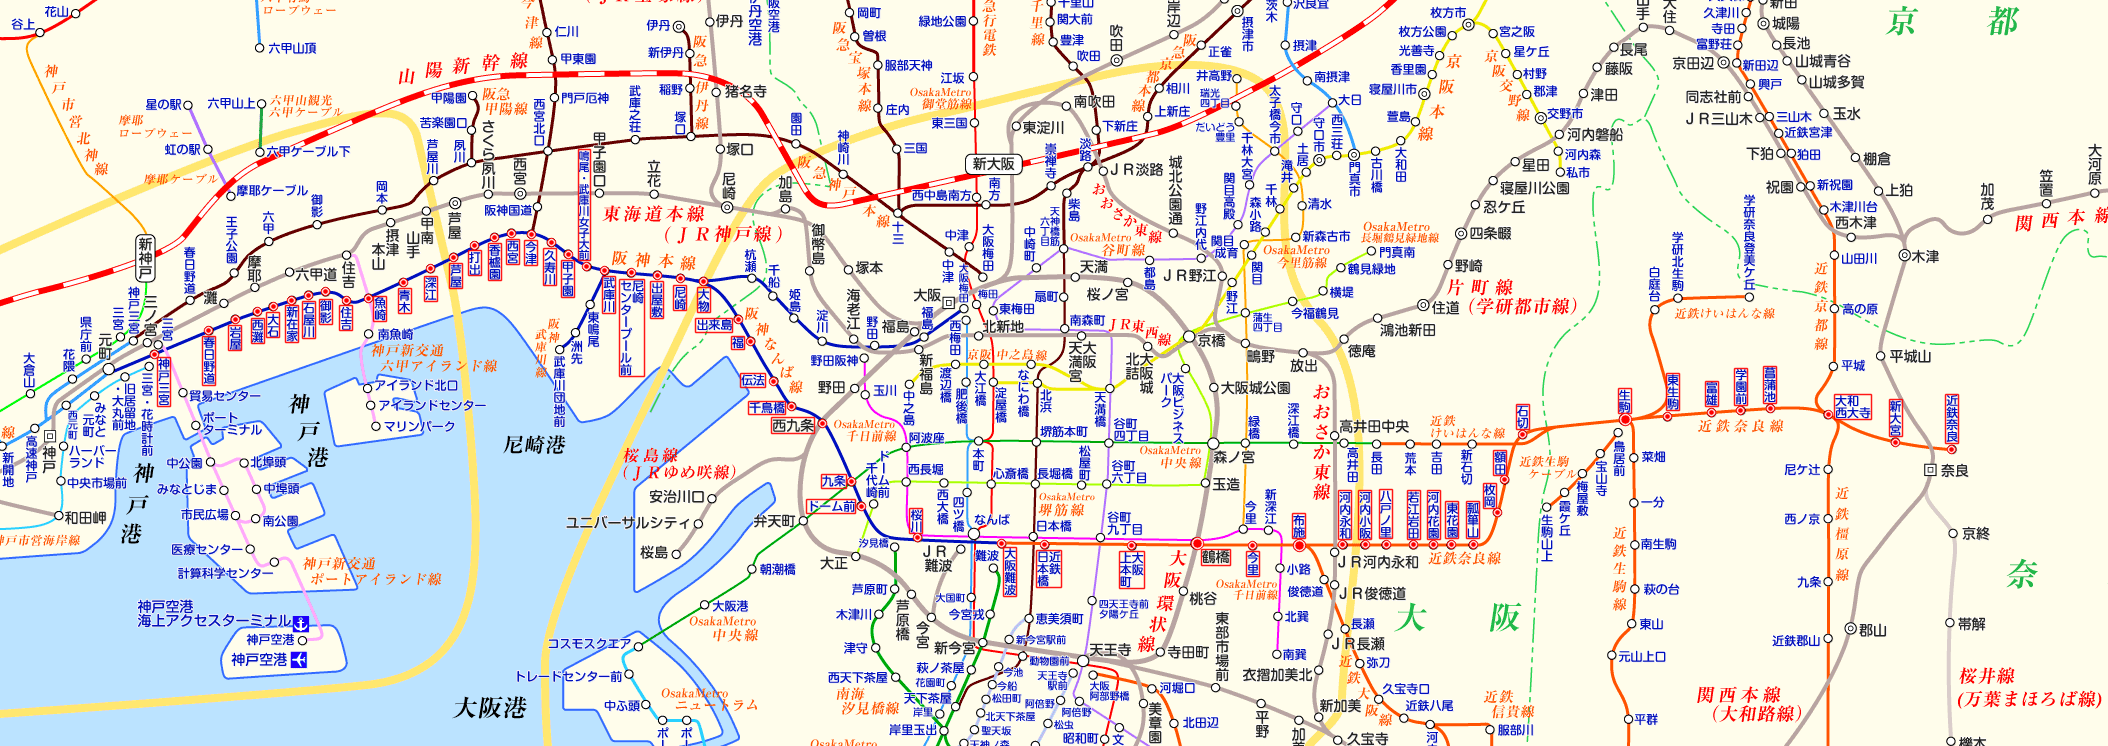 阪神電車 近鉄奈良行きの路線図